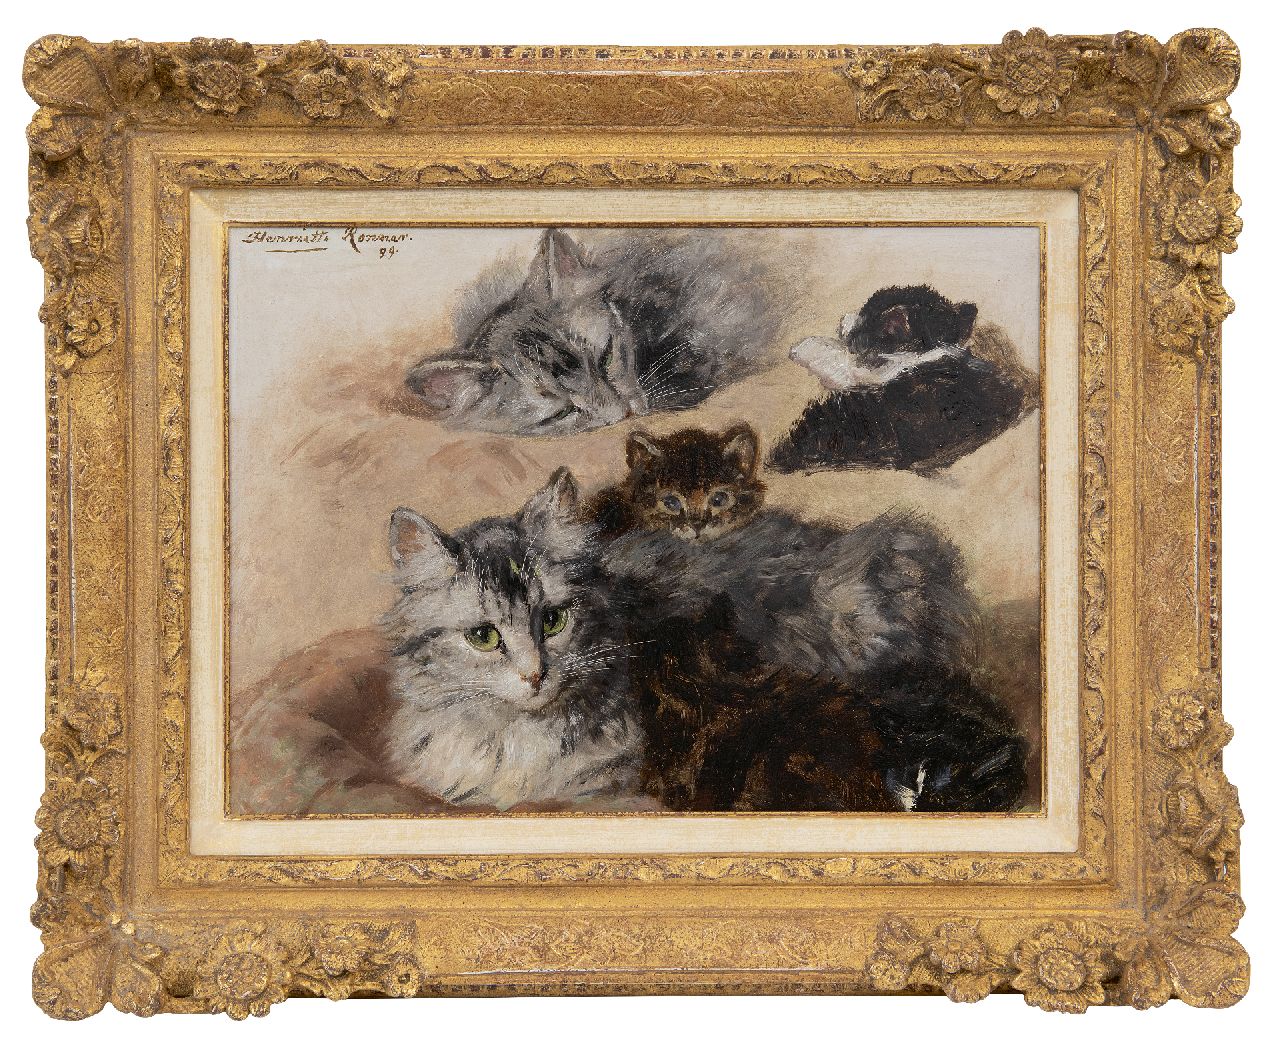 Ronner-Knip H.  | Henriette Ronner-Knip | Schilderijen te koop aangeboden | Studie van poes en kittens, olieverf op paneel 27,7 x 37,4 cm, gesigneerd linksboven en gedateerd '99